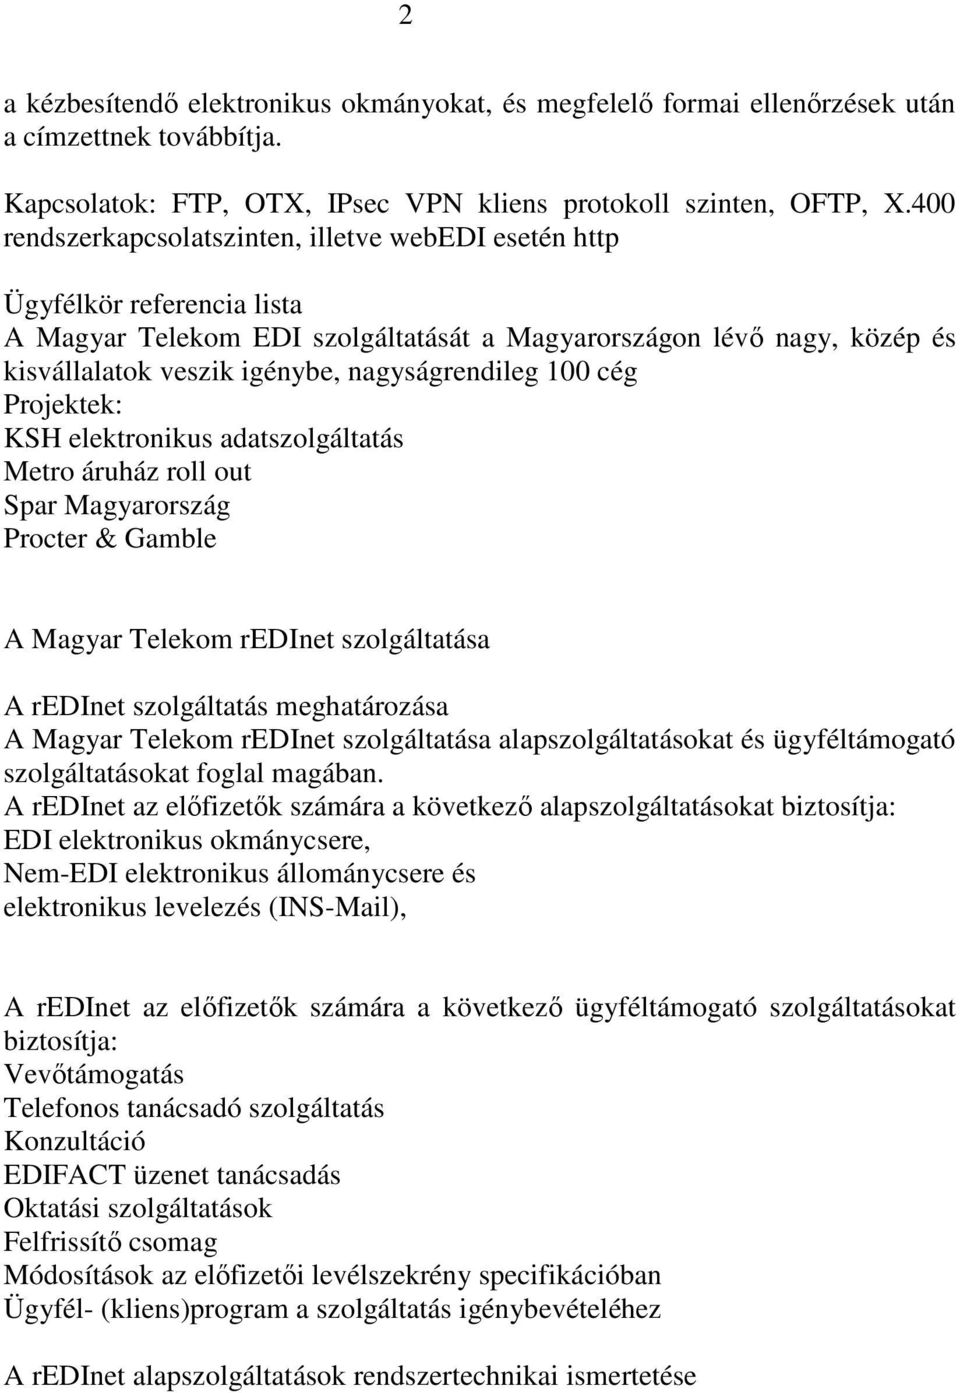 nagyságrendileg 100 cég Projektek: KSH elektronikus adatszolgáltatás Metro áruház roll out Spar Magyarország Procter & Gamble A Magyar Telekom redinet szolgáltatása A redinet szolgáltatás